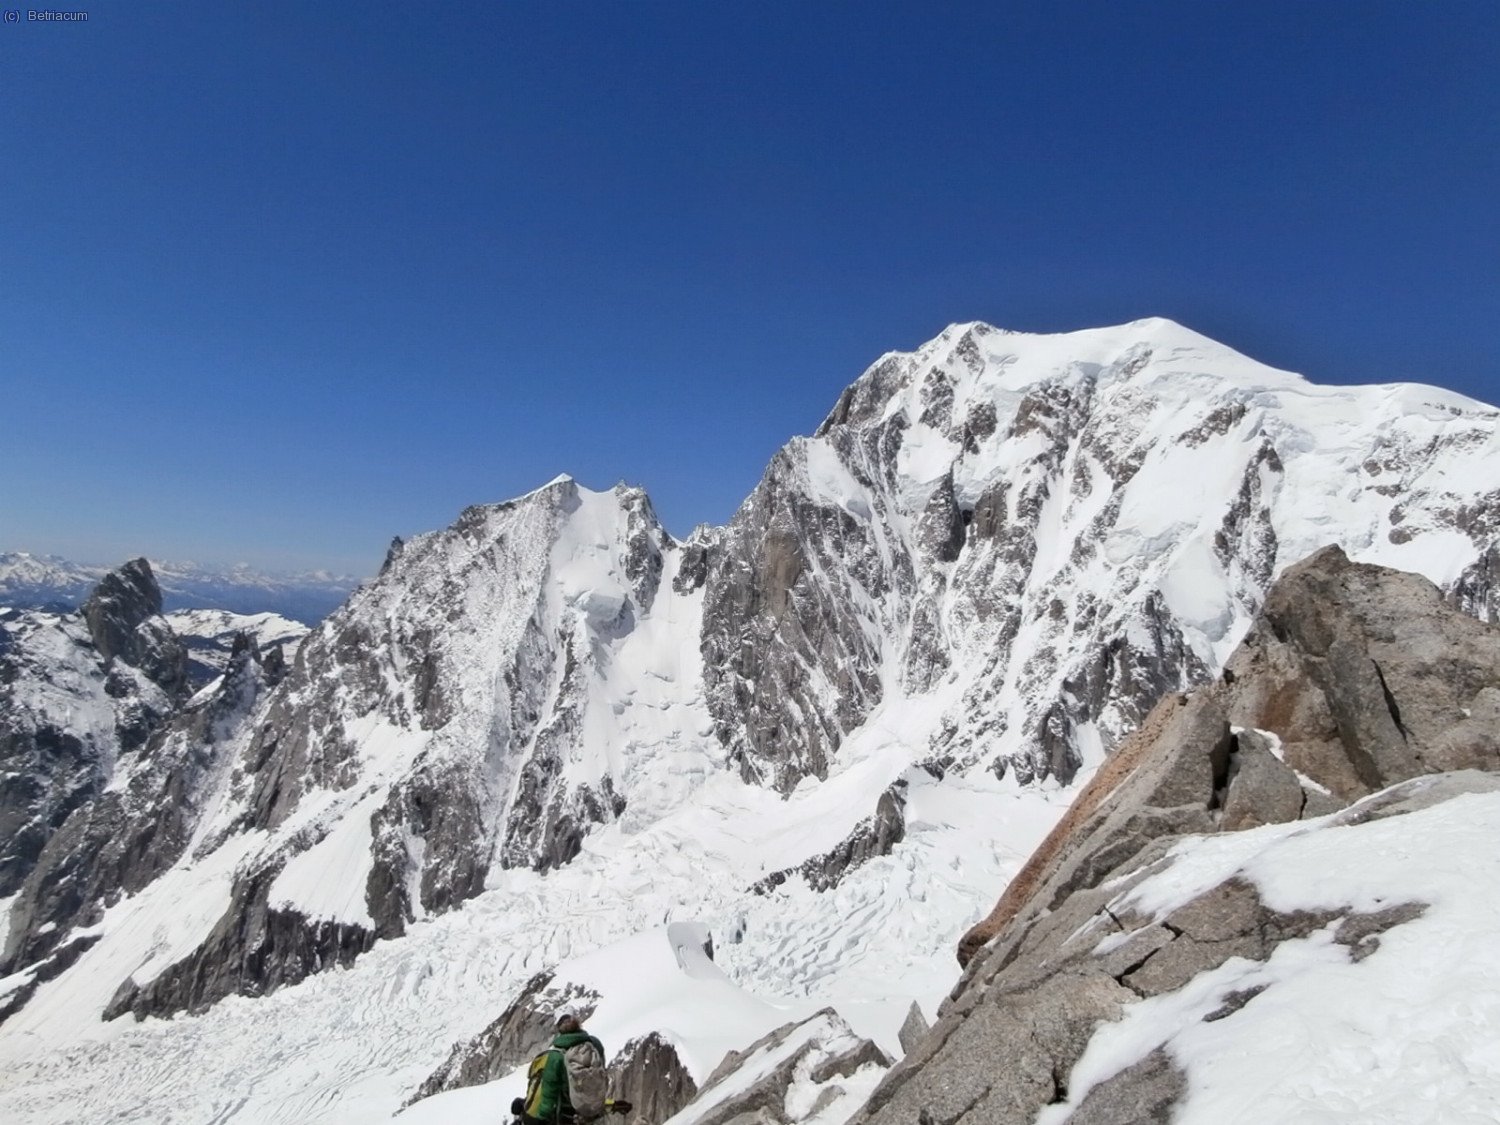 Arête de Peuterey i Mont Blanc.